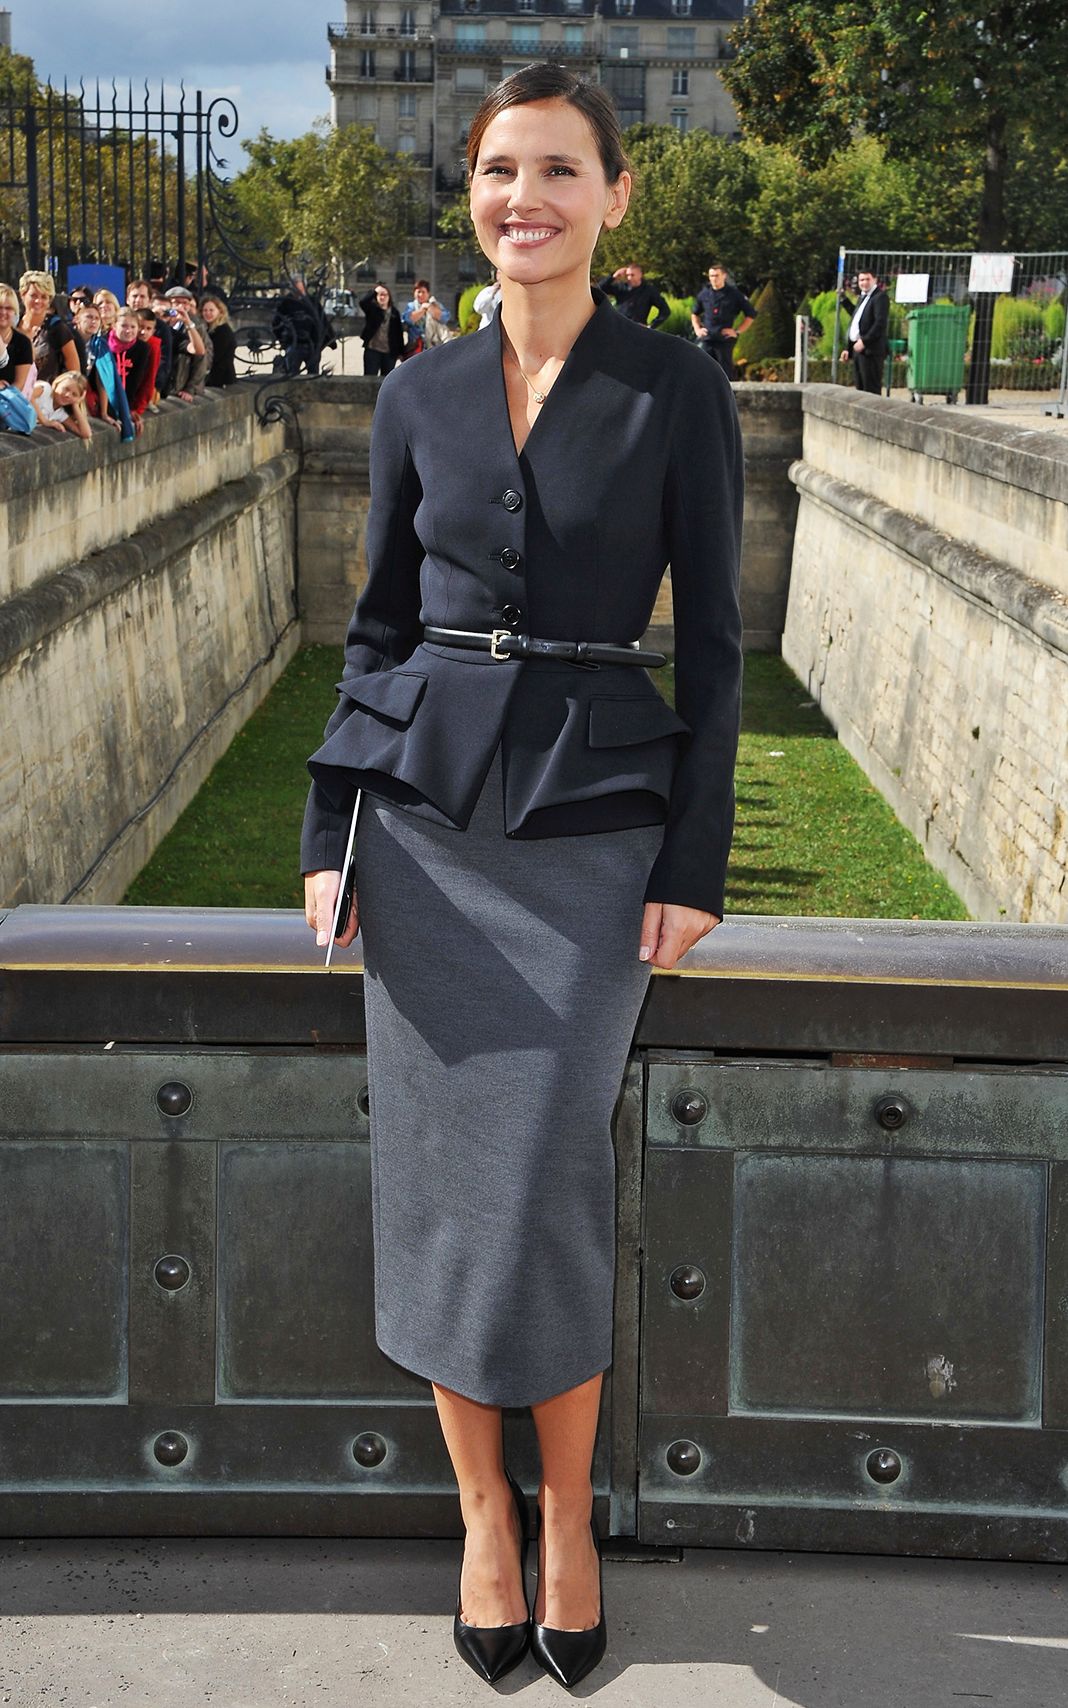 Виржини Ледуайен на фотоколле шоу Christian Dior Весна/Лето 2013 в рамках Недели моды в Париже, 28 сентября 2012 г.